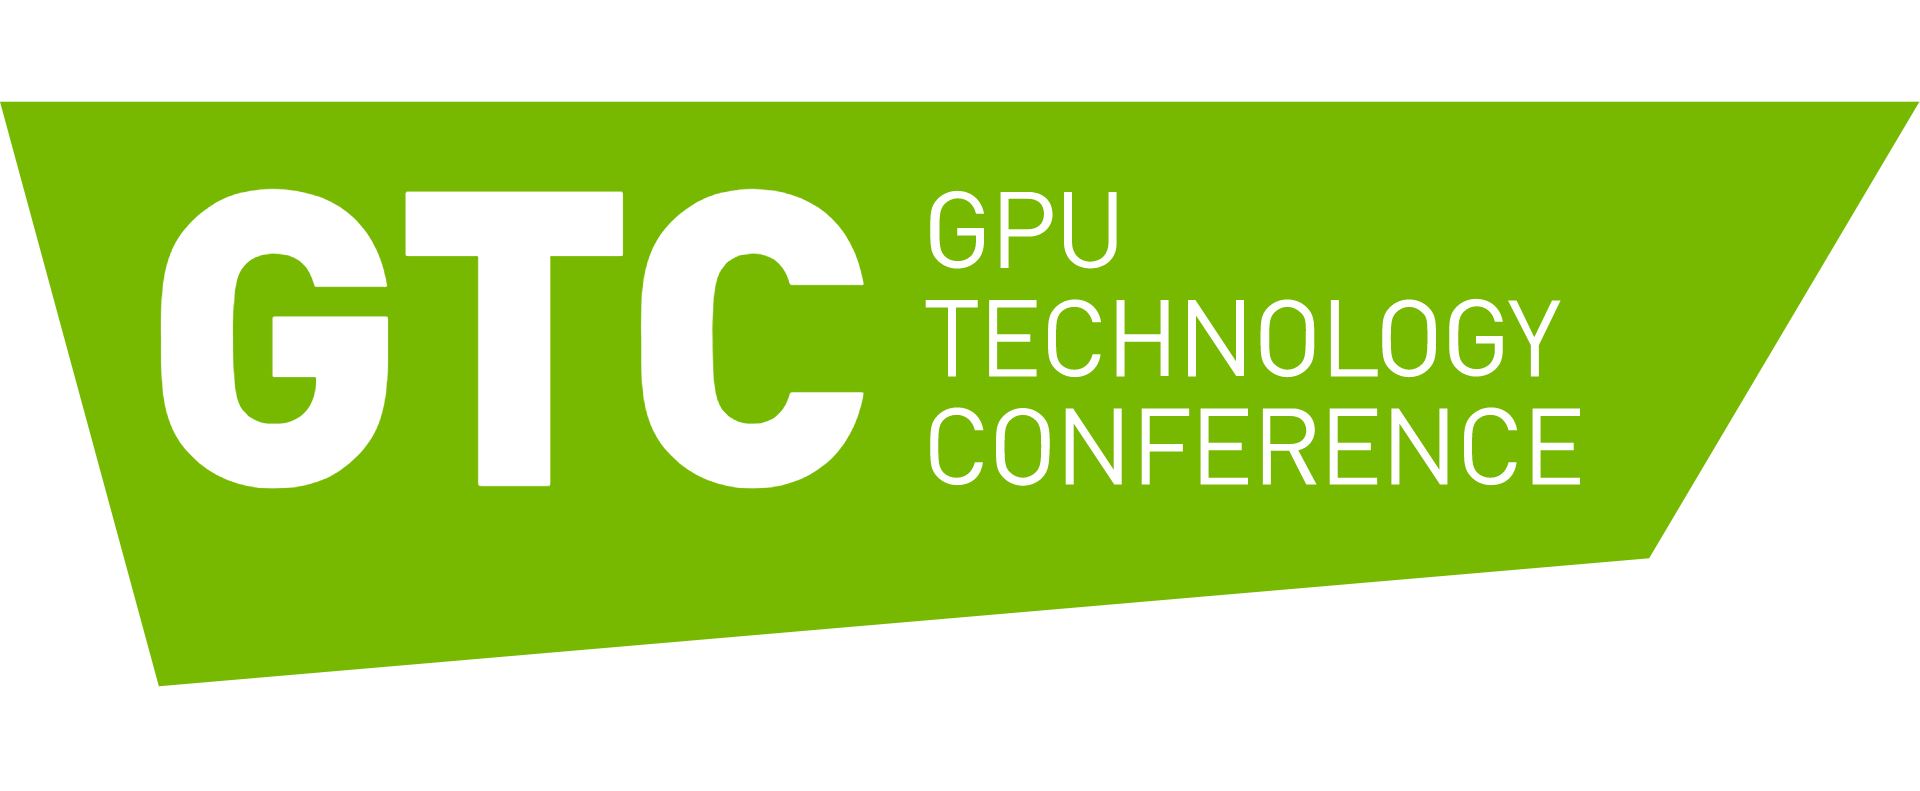 Immagine pubblicata in relazione al seguente contenuto: NVIDIA potrebbe annunciare la prima GPU a 7nm Ampere alla GTC 2020 in marzo | Nome immagine: news30347_NVIDIA-GTC_1.jpg